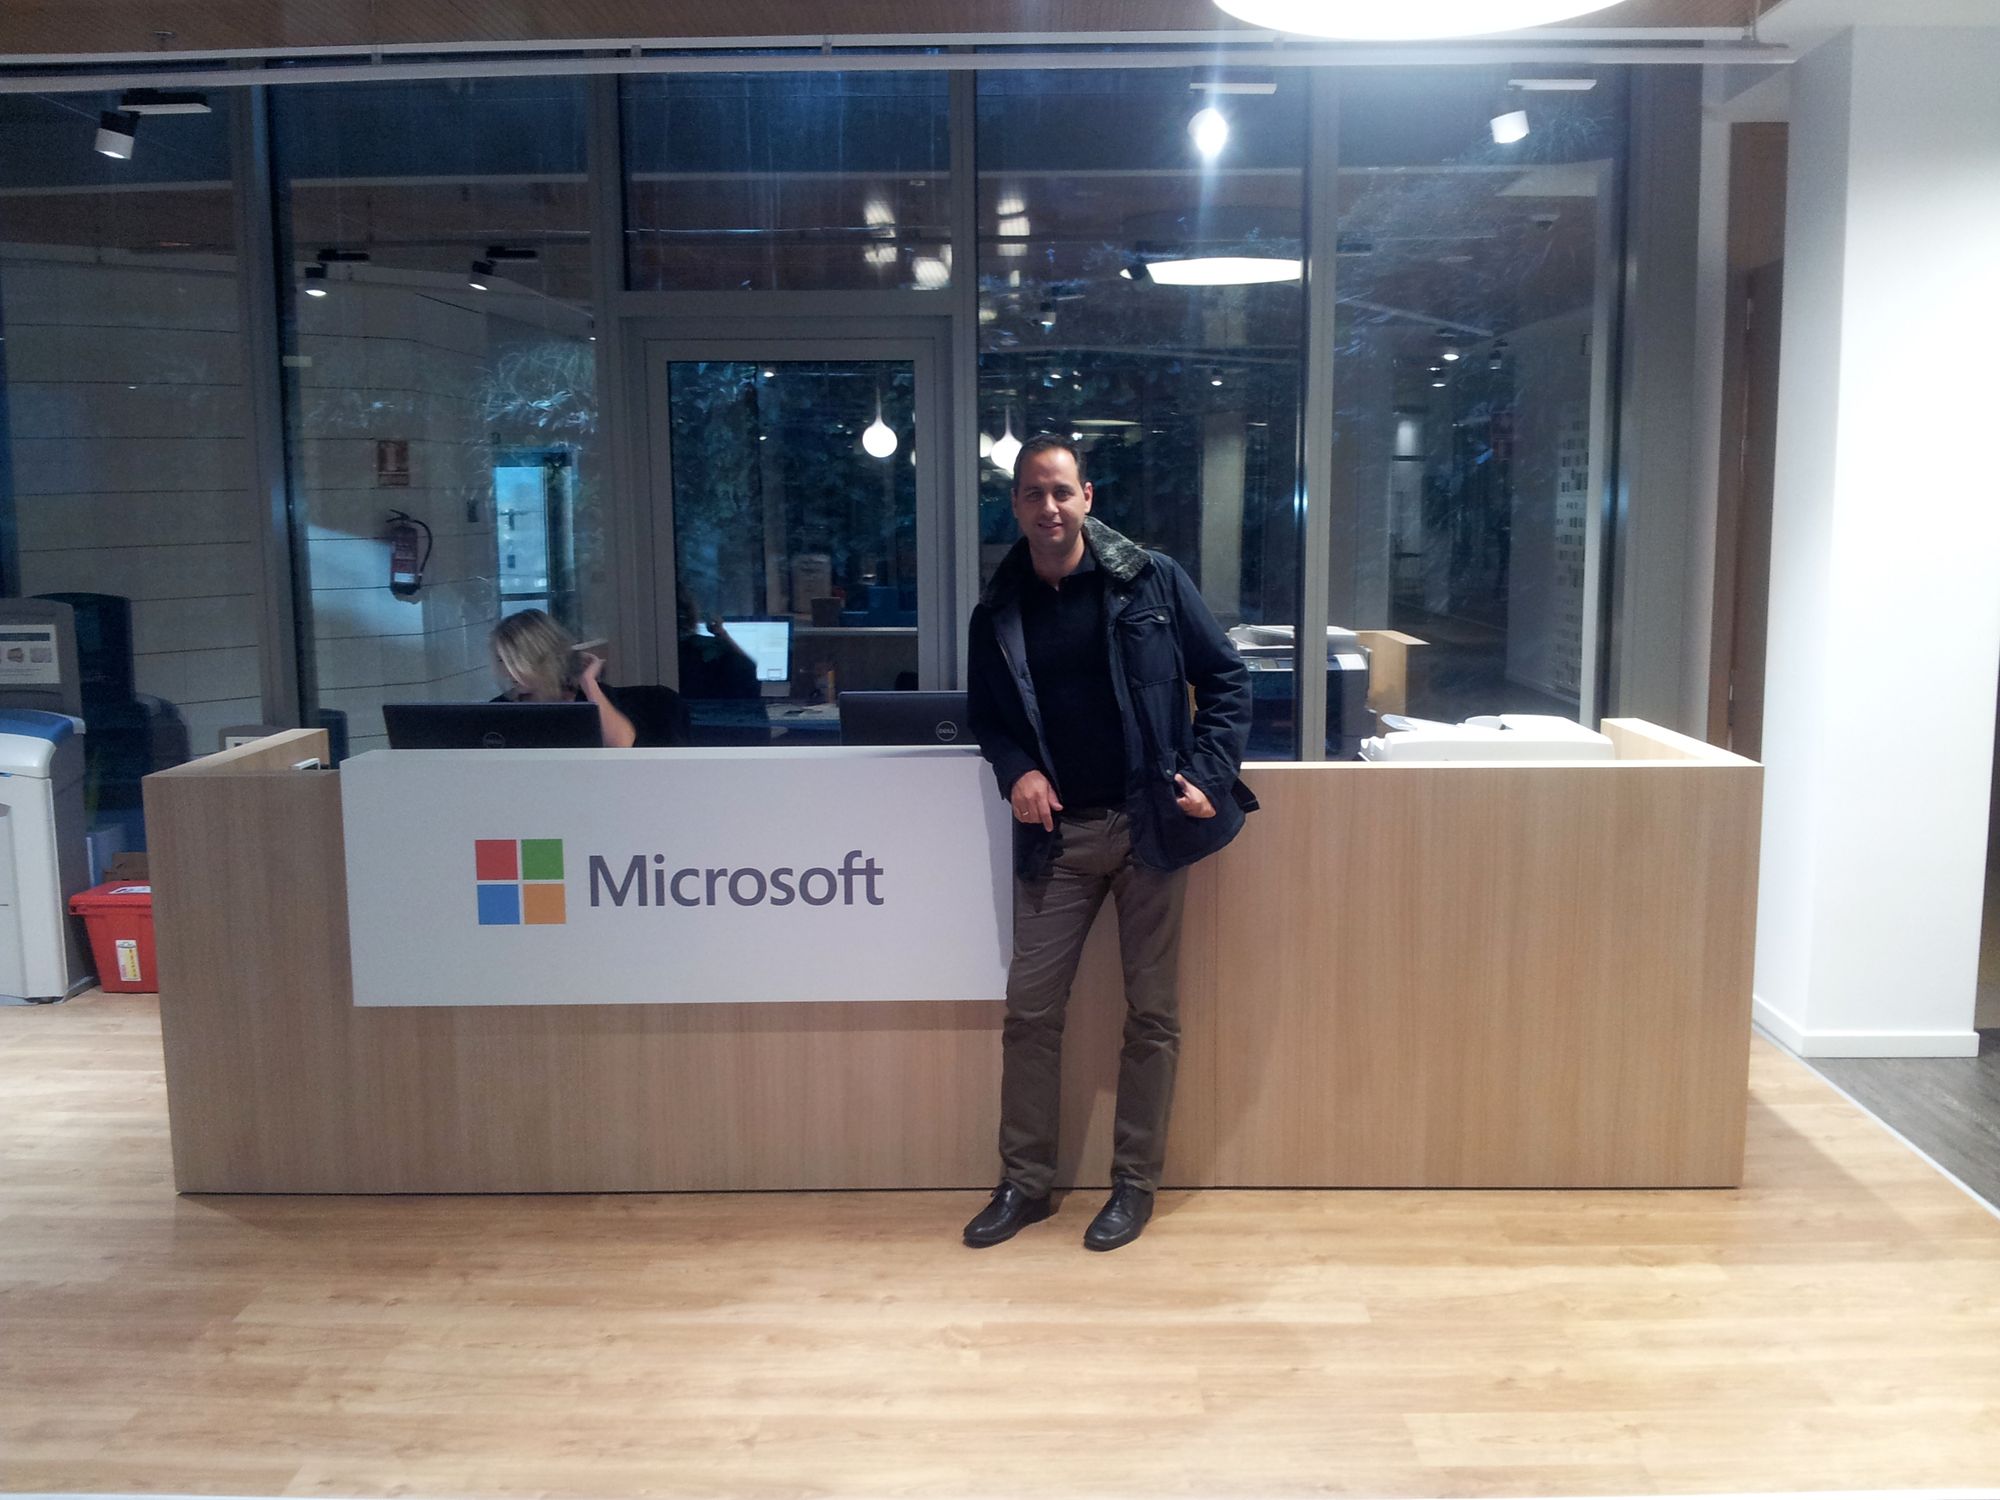 Visita a Microsoft como BlogsterApp, Startup de alto potencial